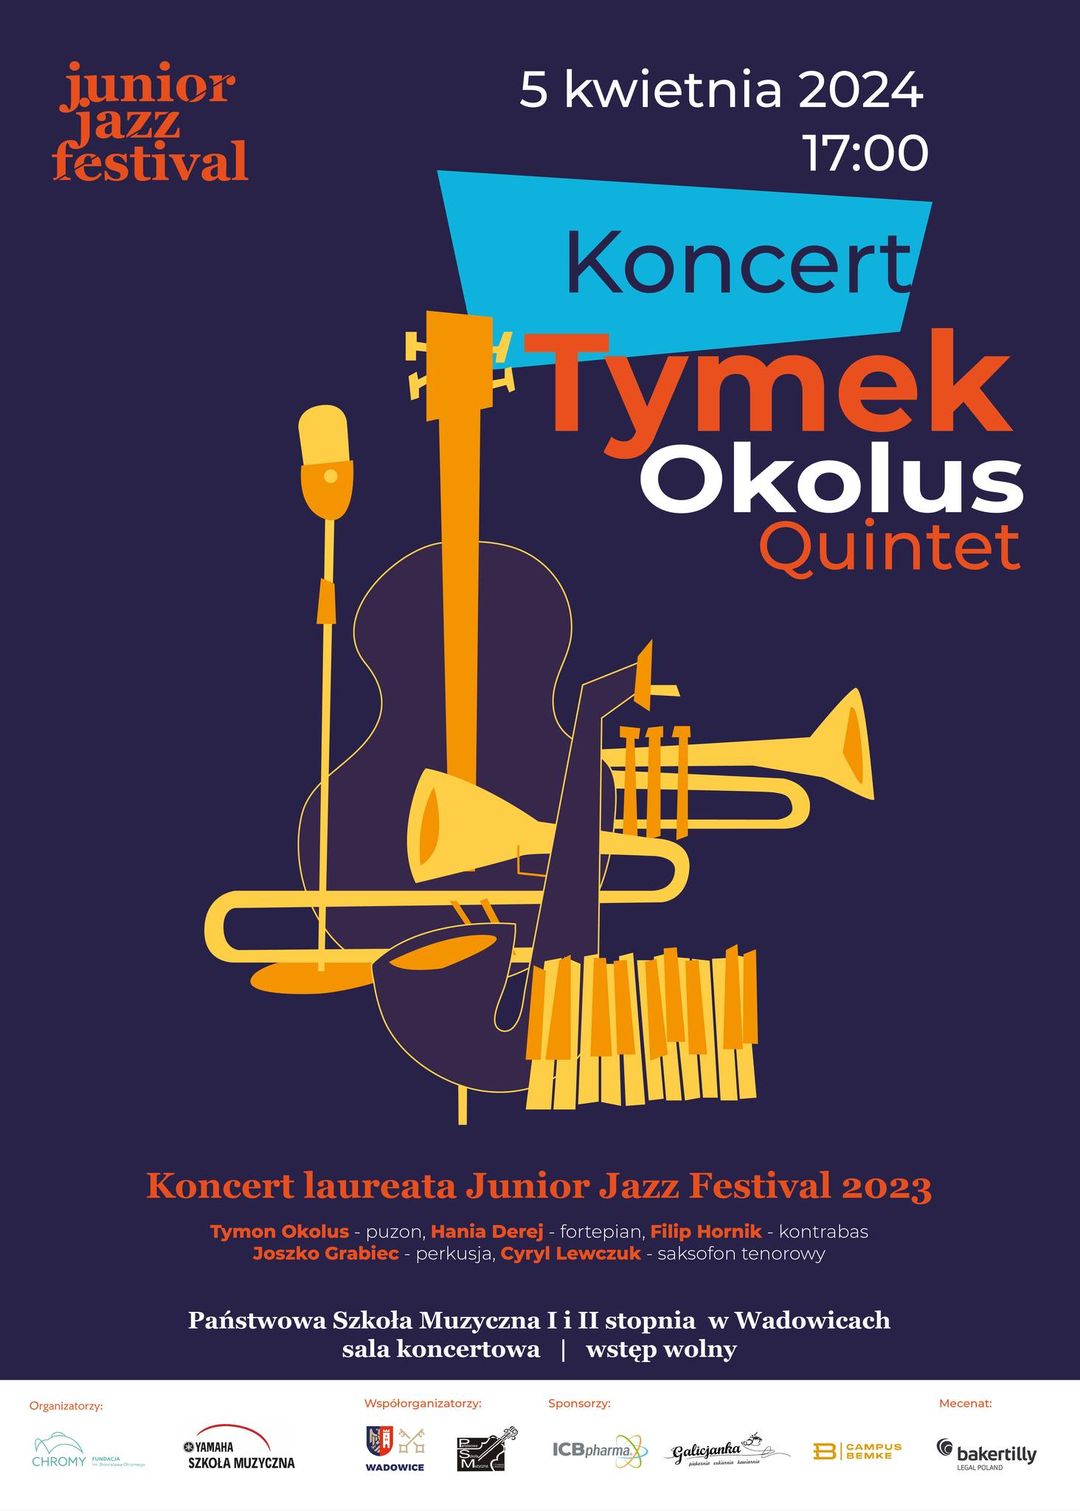 Tymek Okolus Quintet